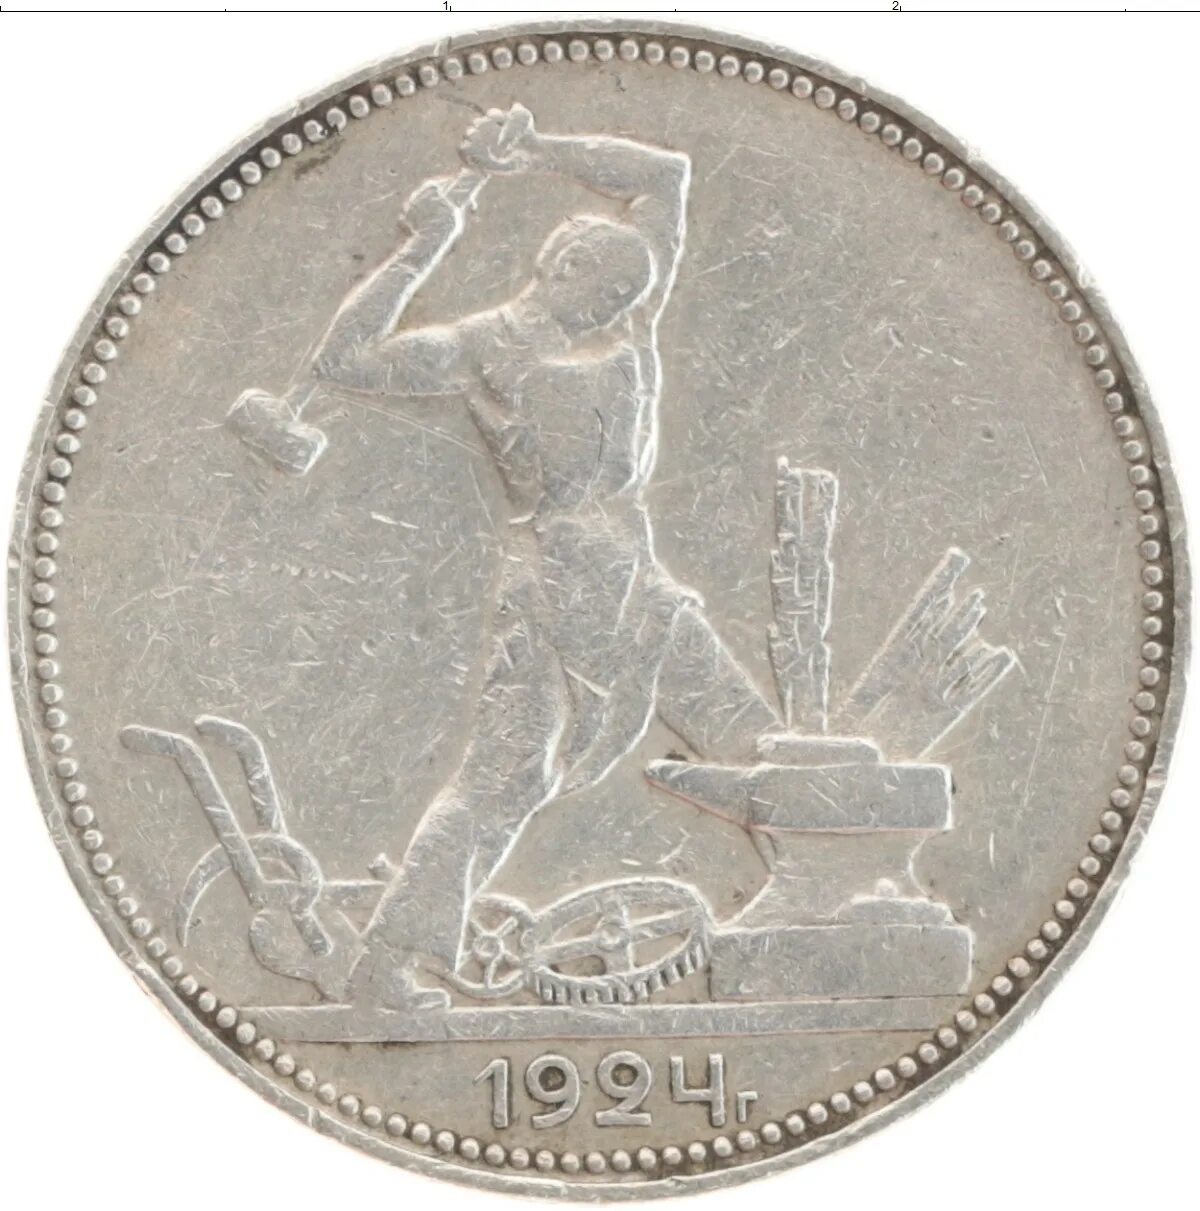 50 Копеек 1926 года. Монета серебряный полтинник 1924г. Полтинник 1926. 50 Коп 1924. Монета 50 копеек года серебро